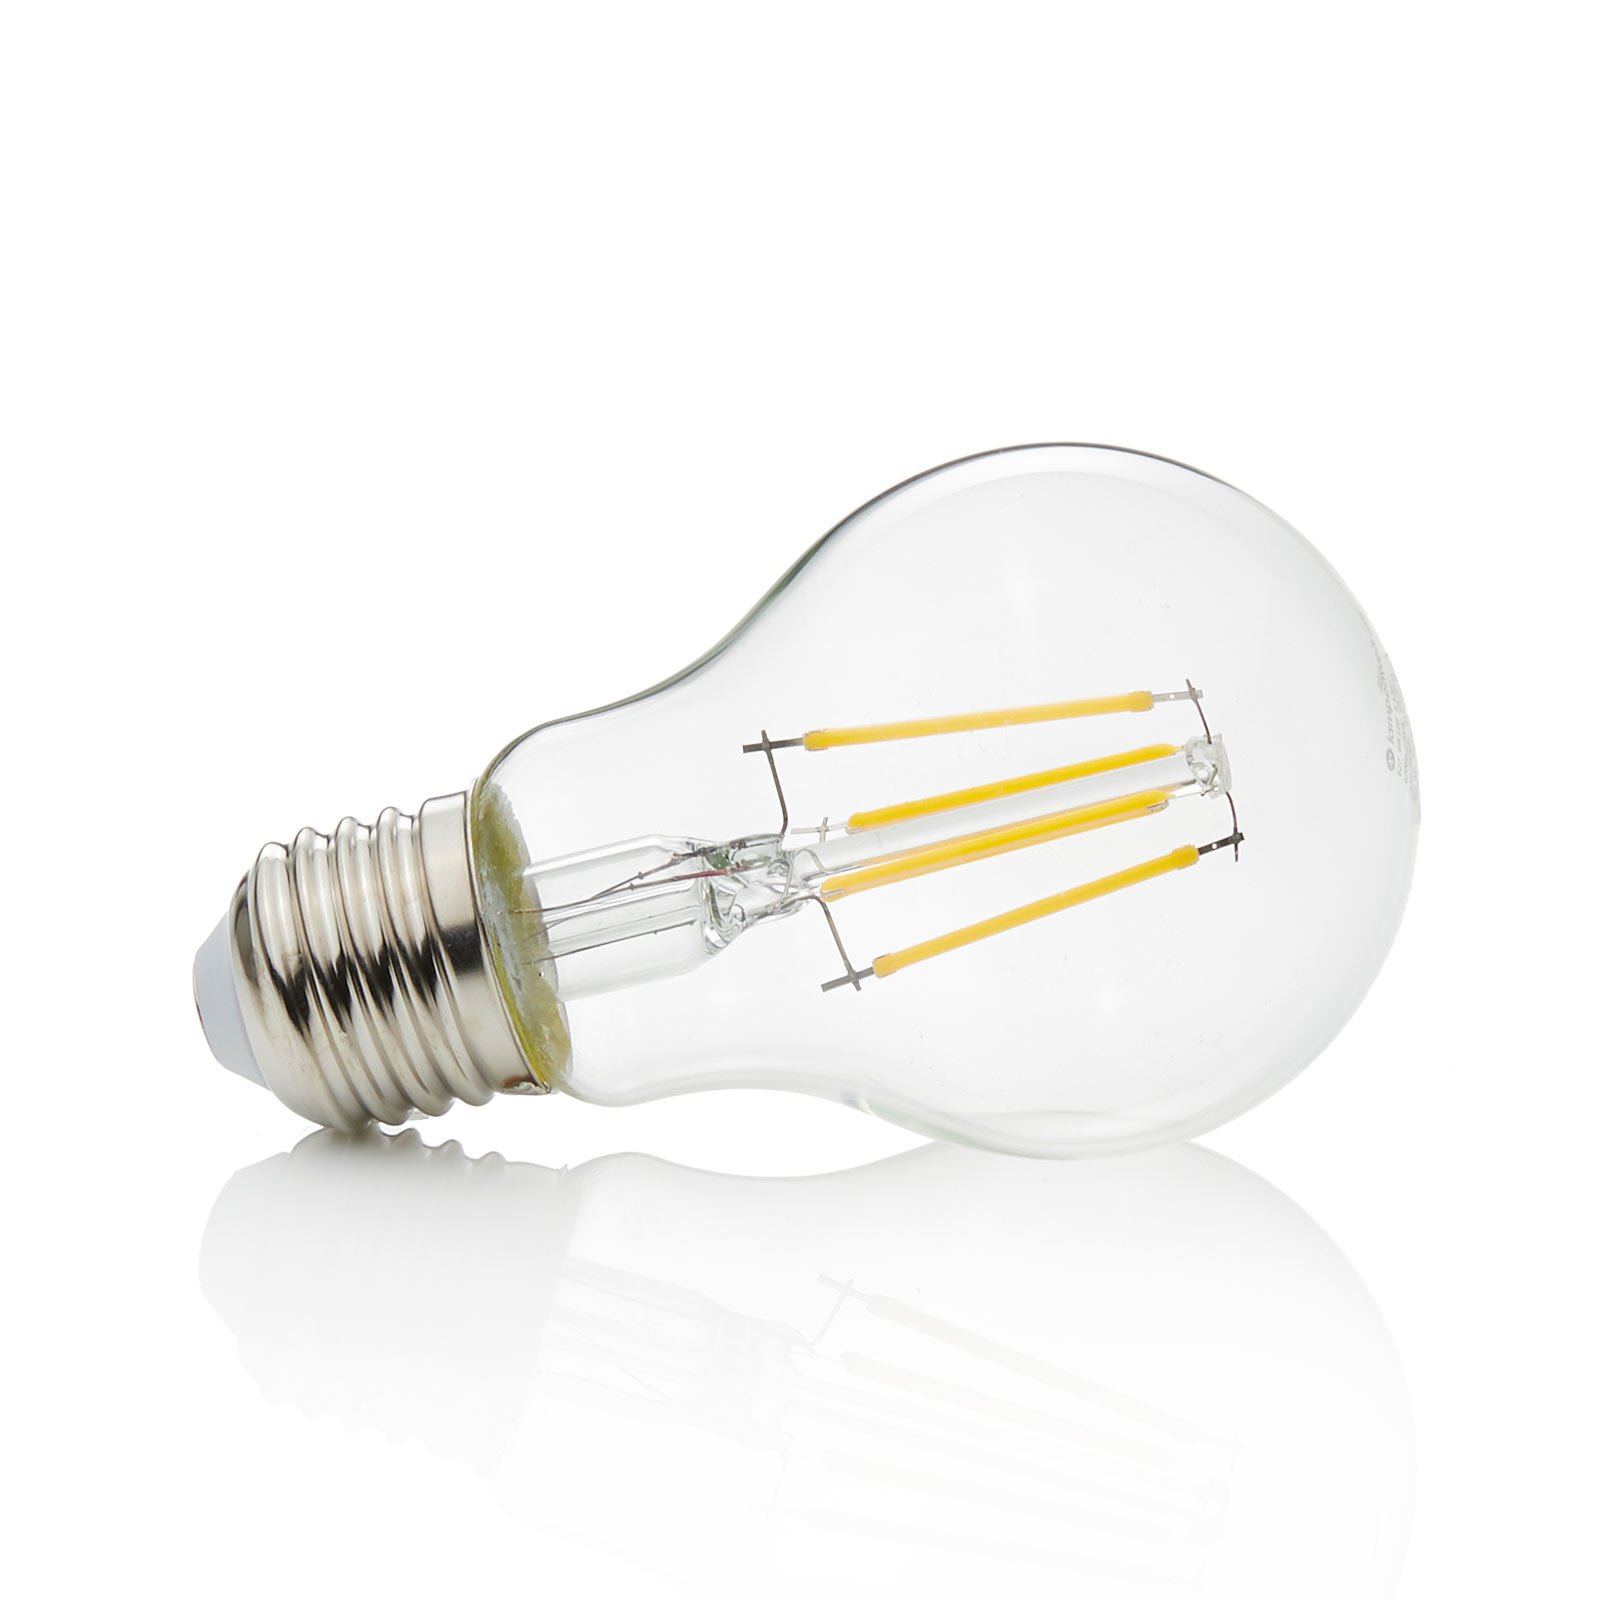 E27 filament LED bulb 4 W, 470 lm, 2,700 K, clear